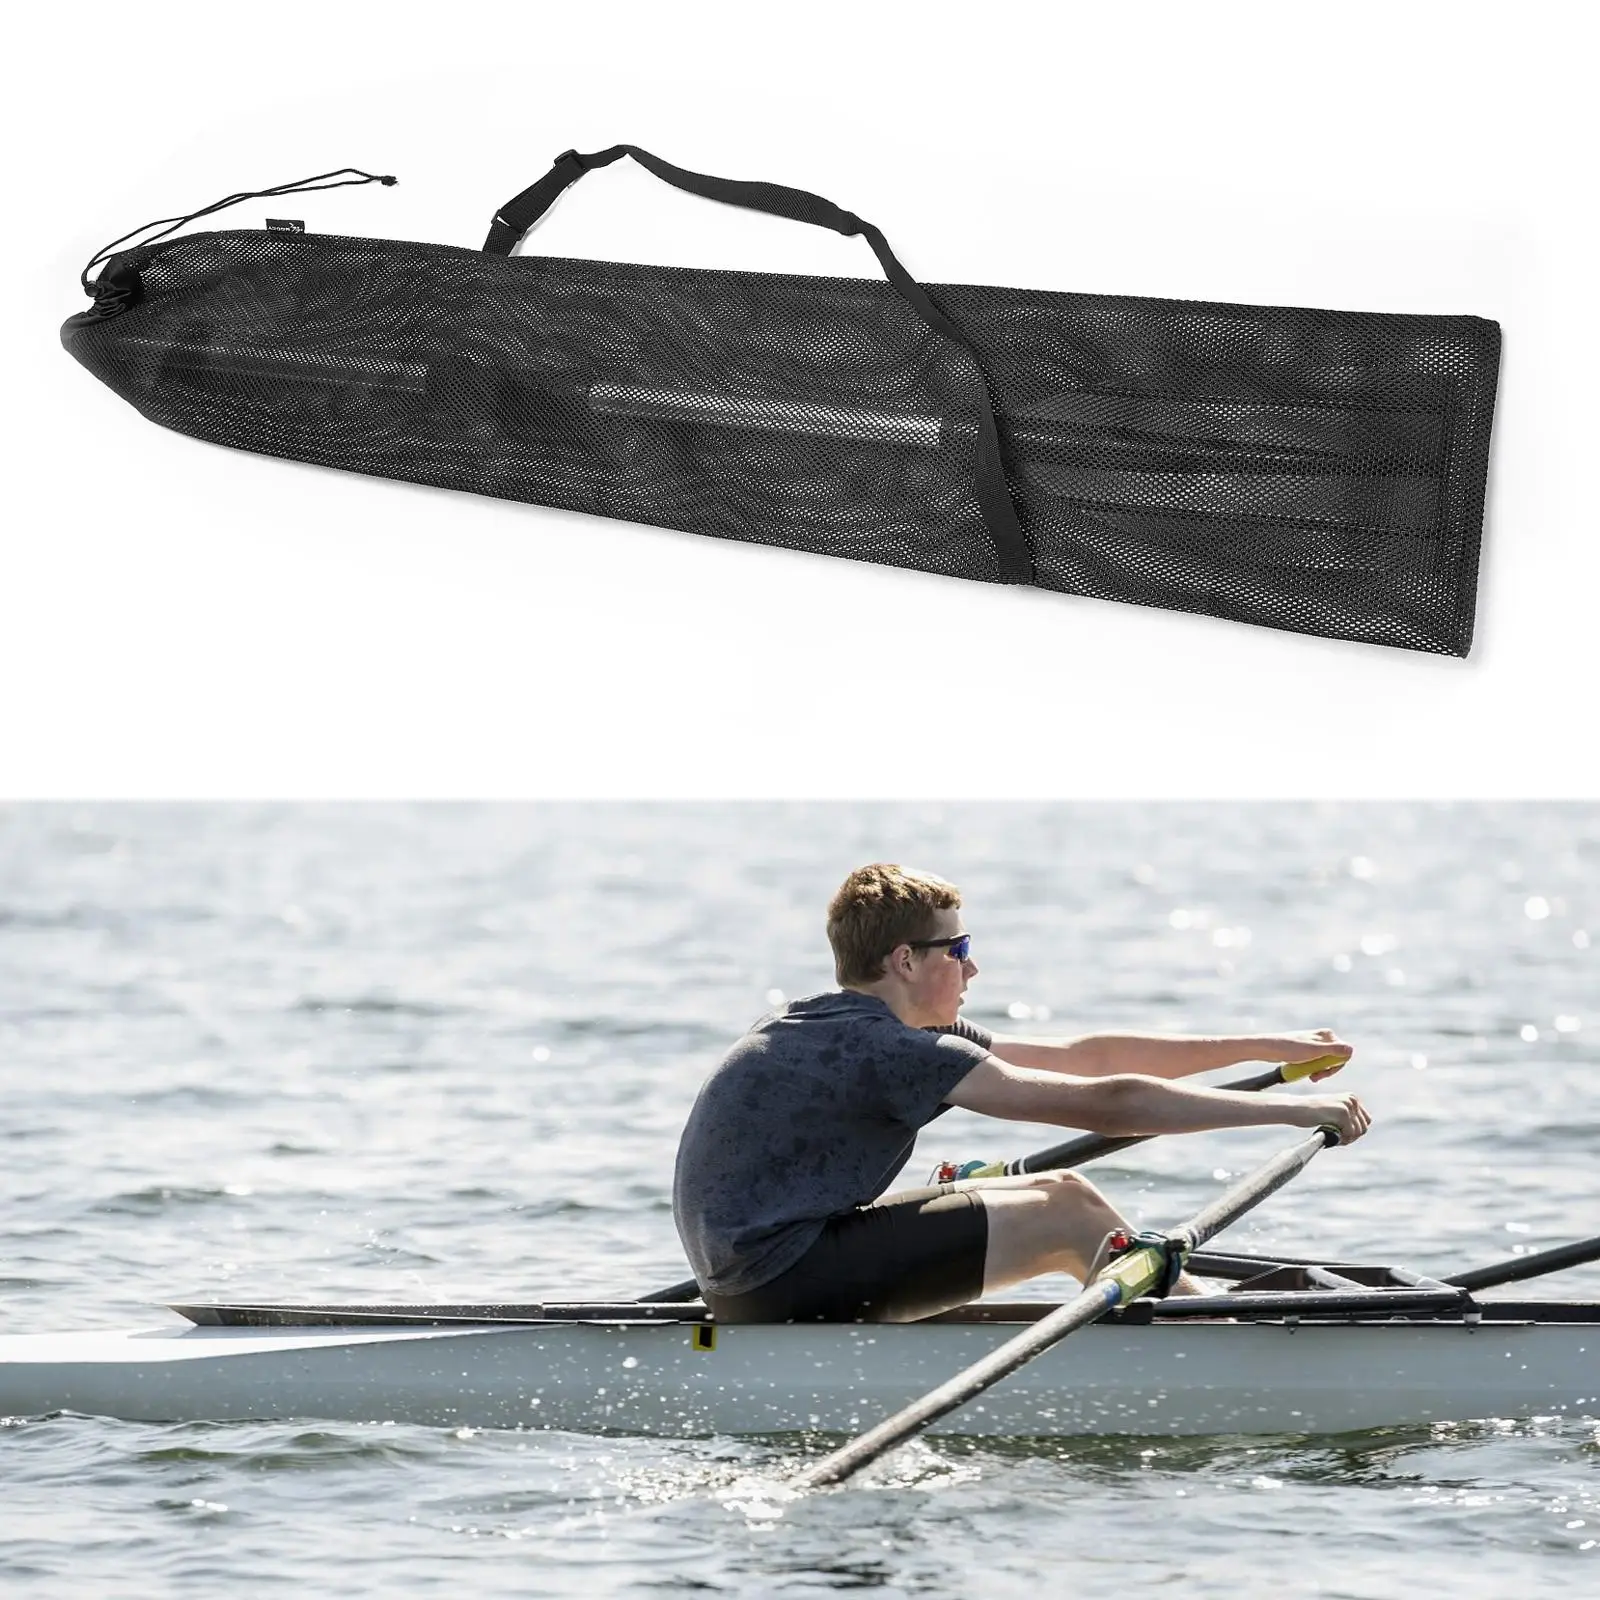 Kayak Paddle Storage Bag Split Shaft Canoe Paddle Holder Pouch Case Protector Carrying Bag Adjustable Shoulder Strap Accessories